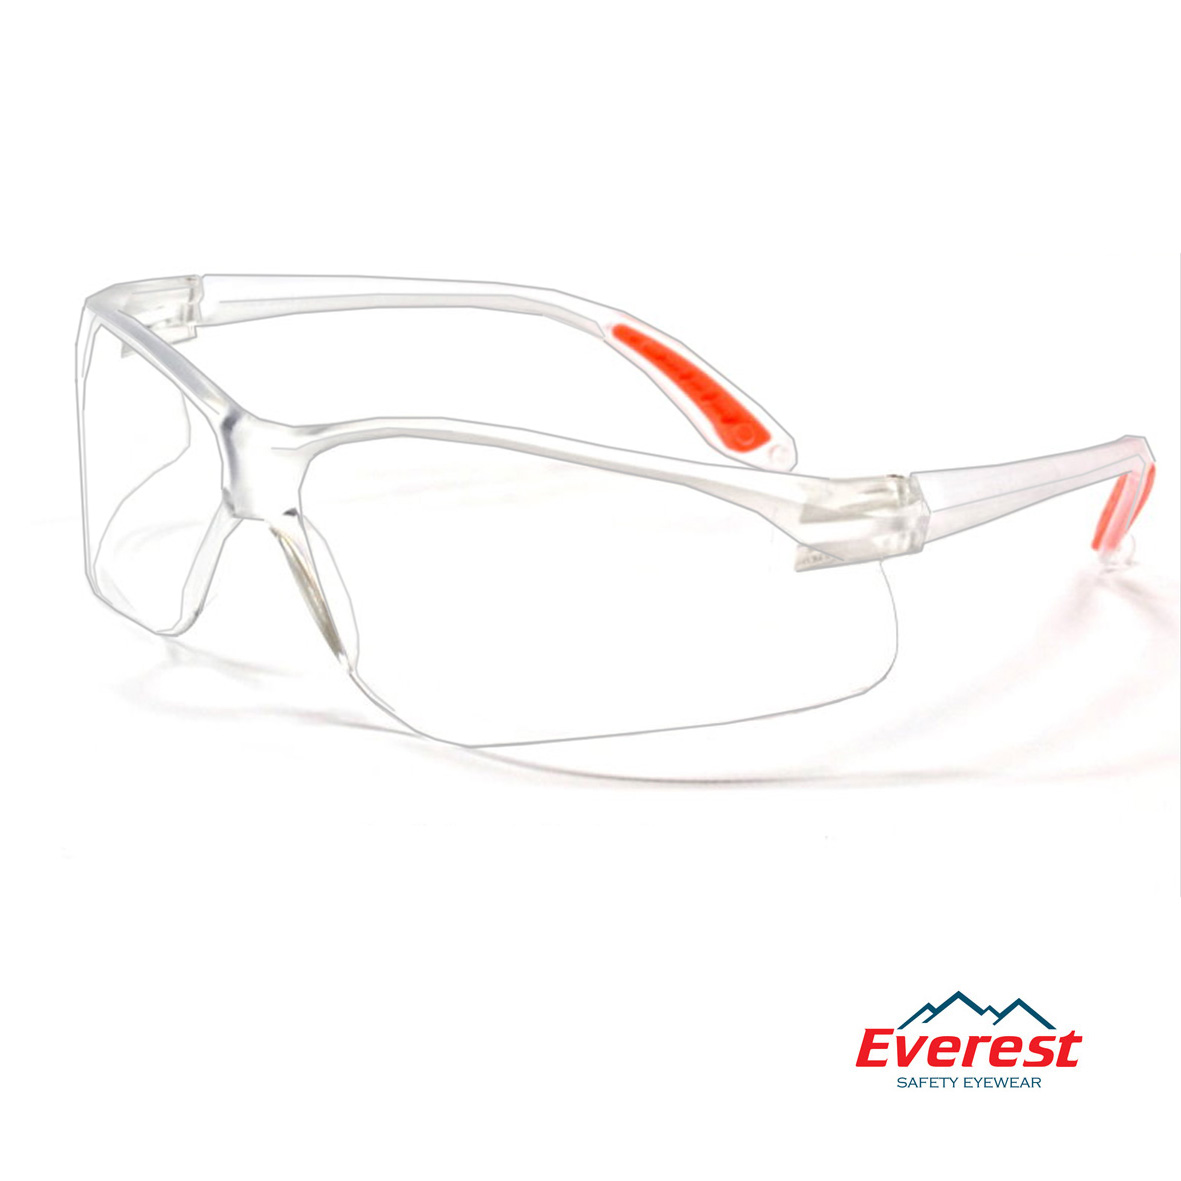 Kính bảo hộ Everest EV201 màu trắng chống bụi, chông trầy xước, chống tia UV-UB, mắt kính chống đọng sương